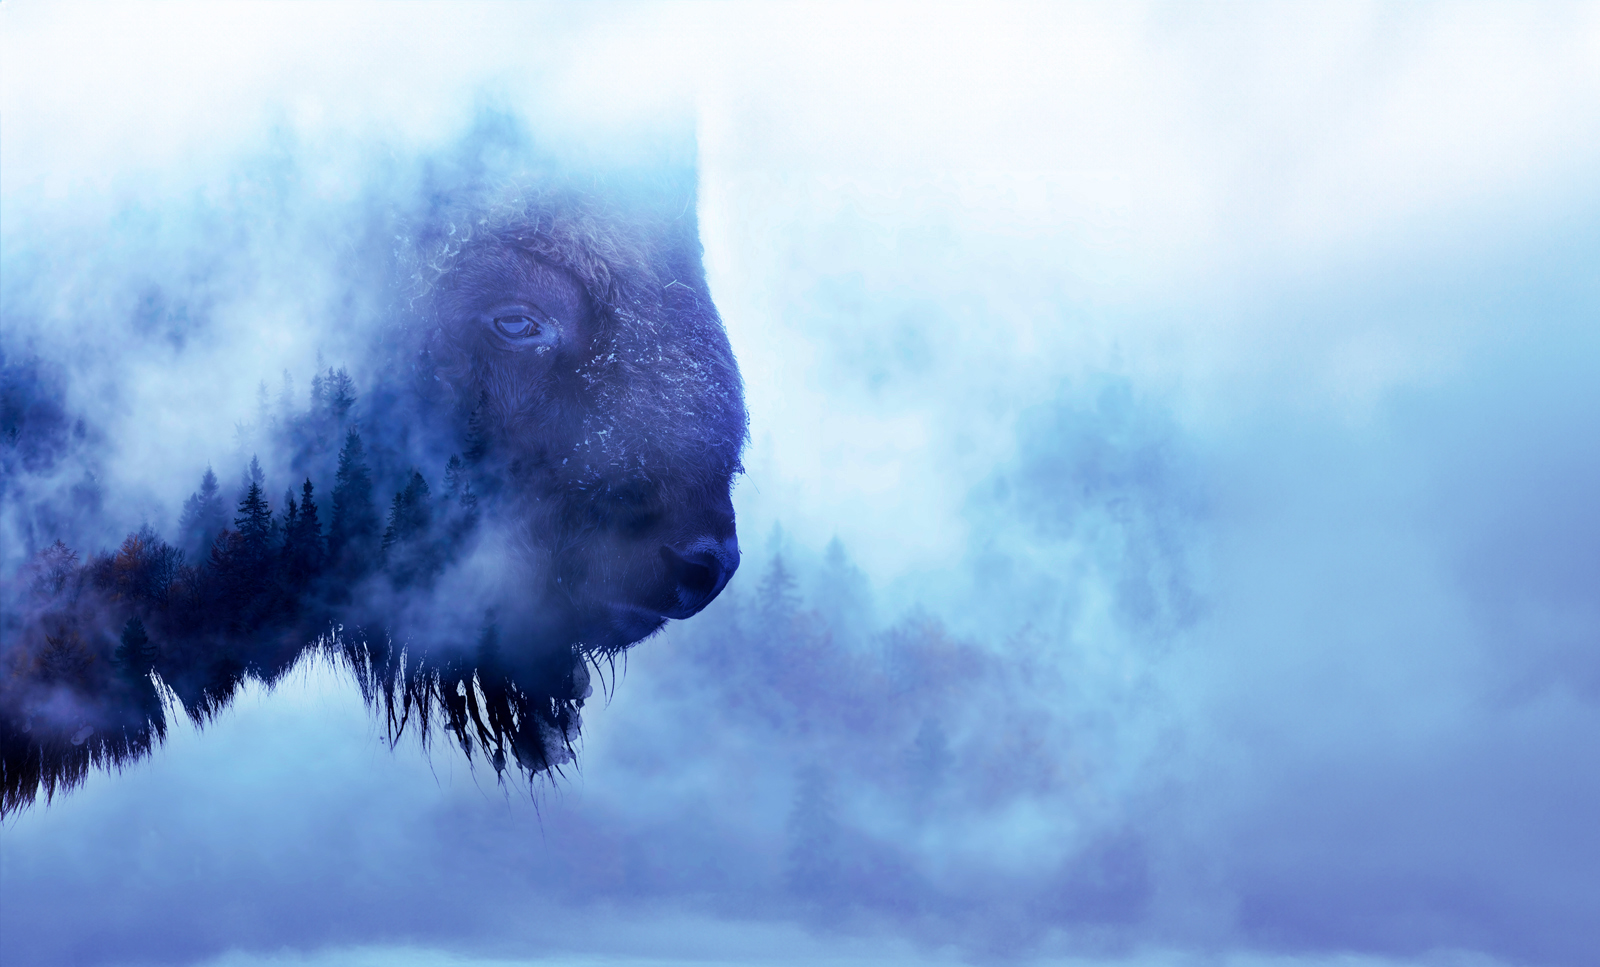 Buffalo in fog